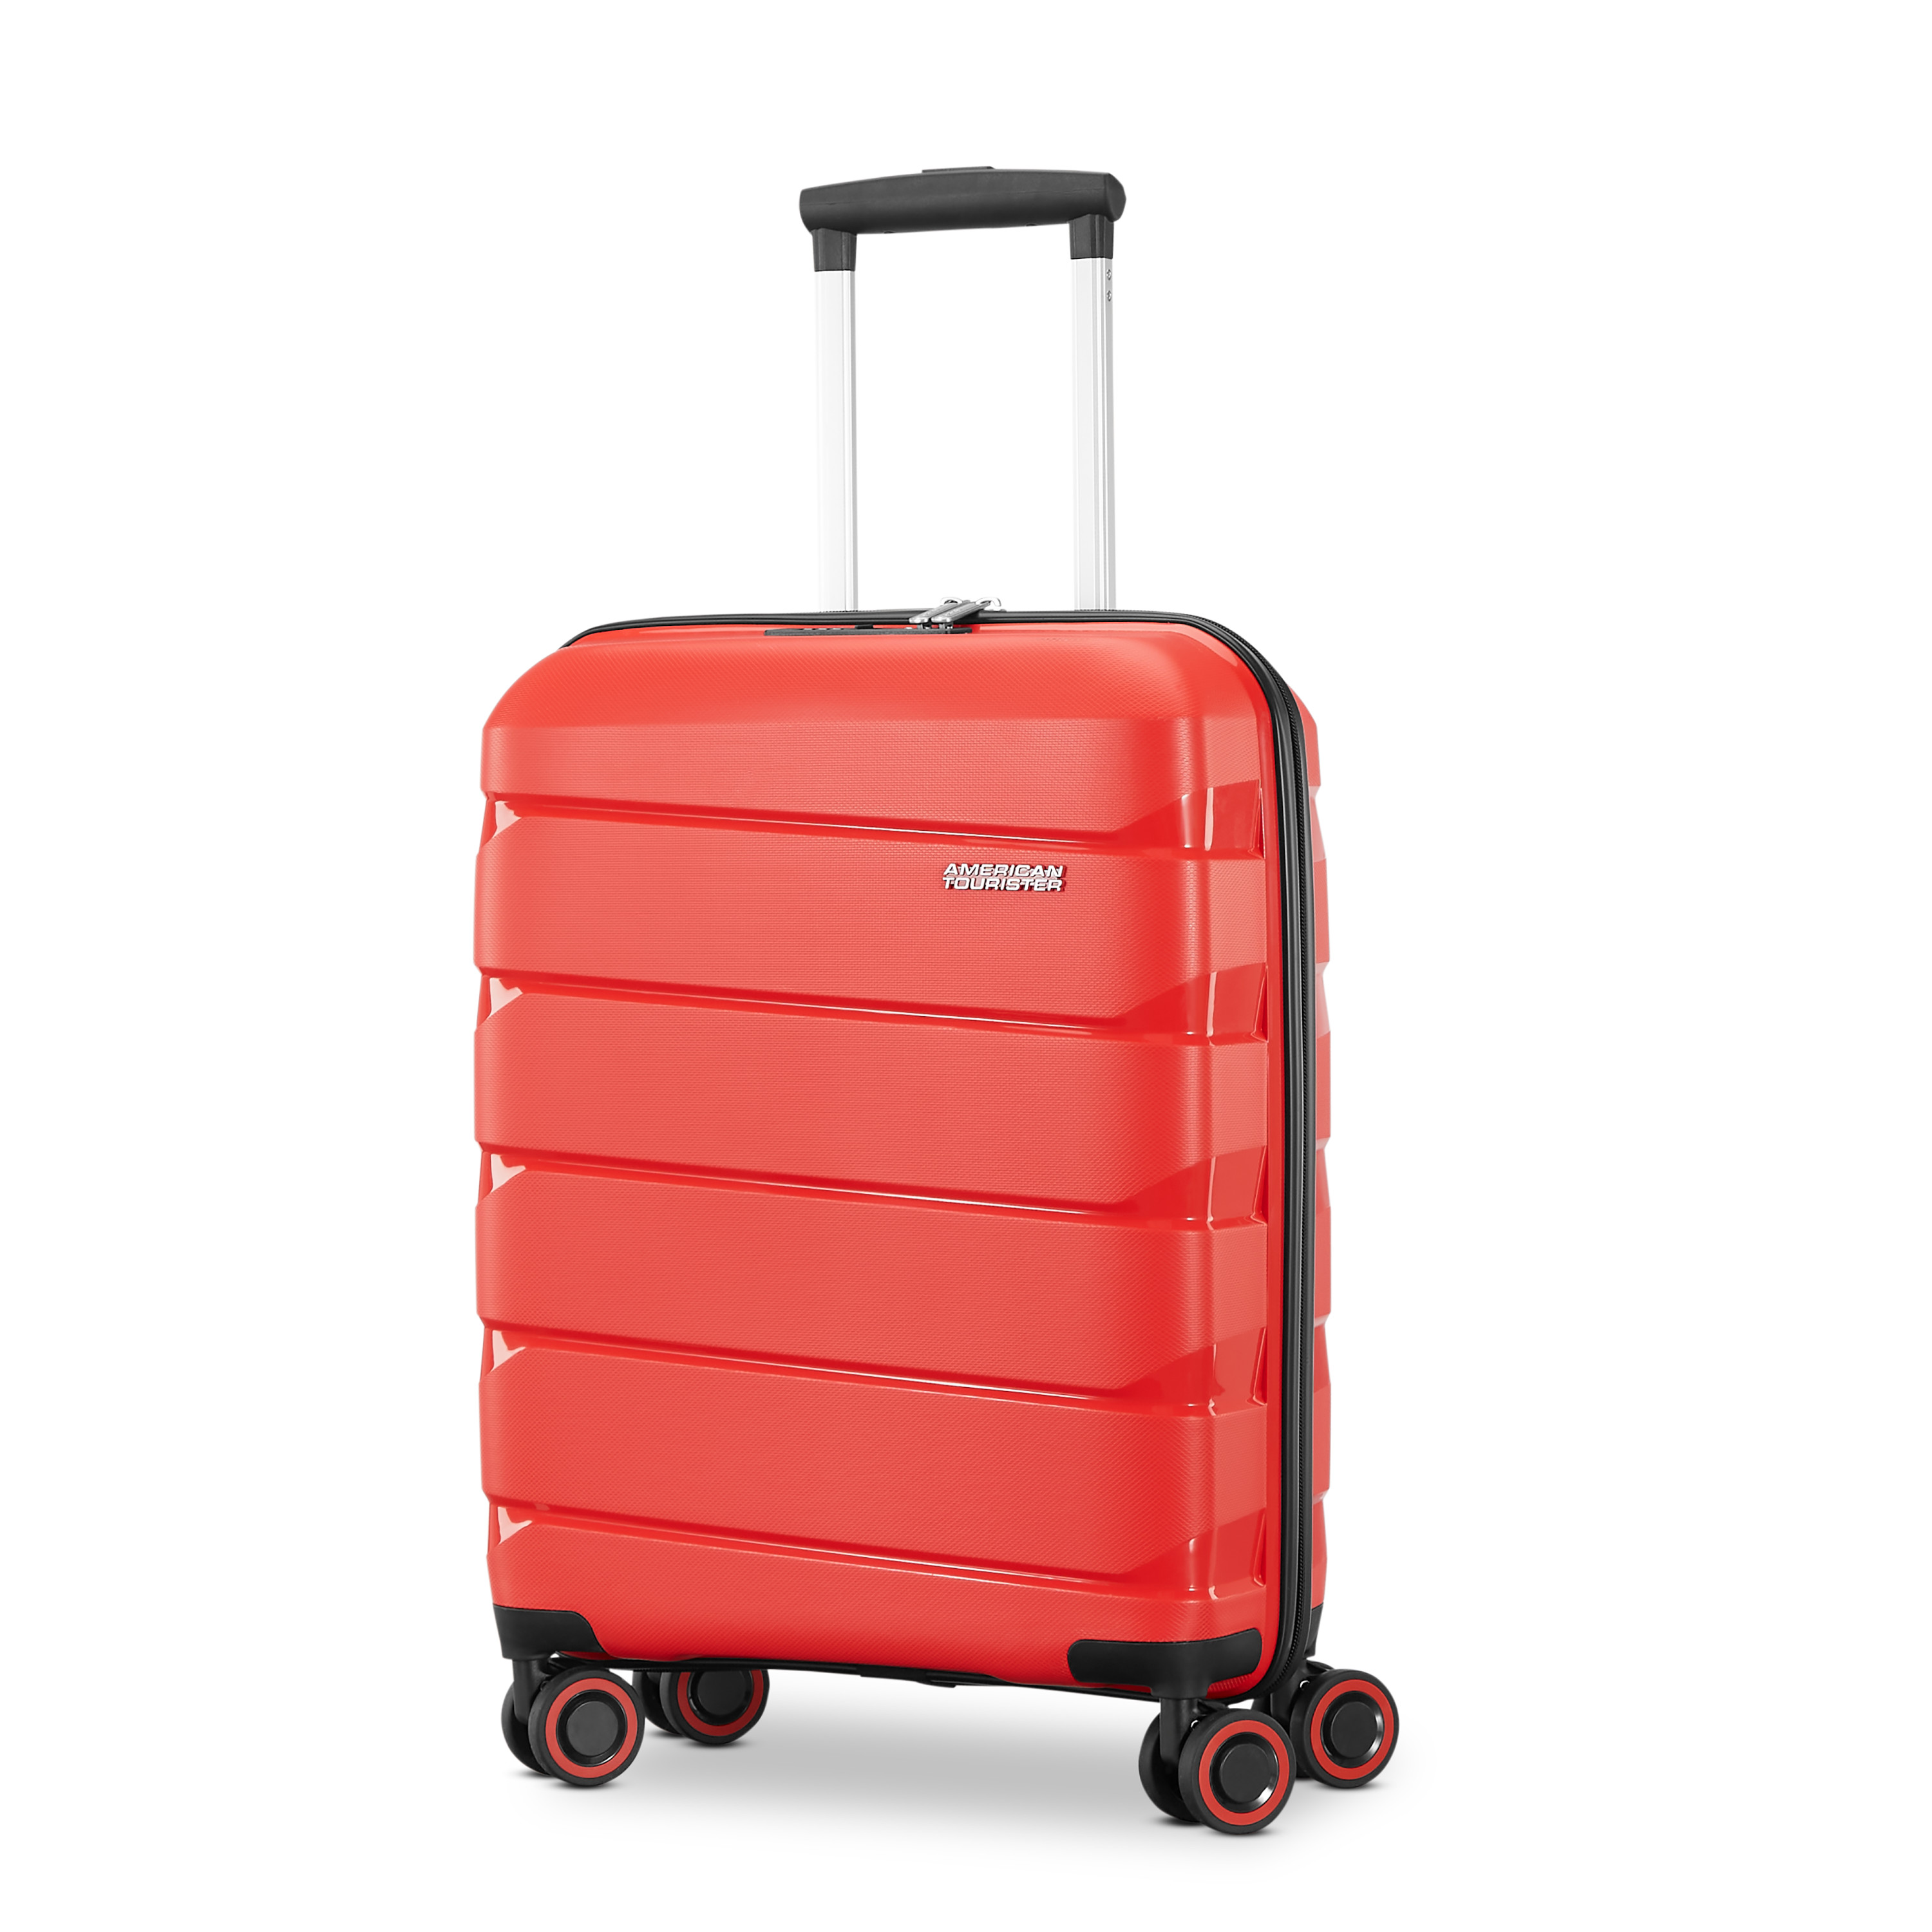 Carry-On - Mochila para debajo del asiento (30 L, 17.0 x 13.0 x 8.0 in),  color rojo